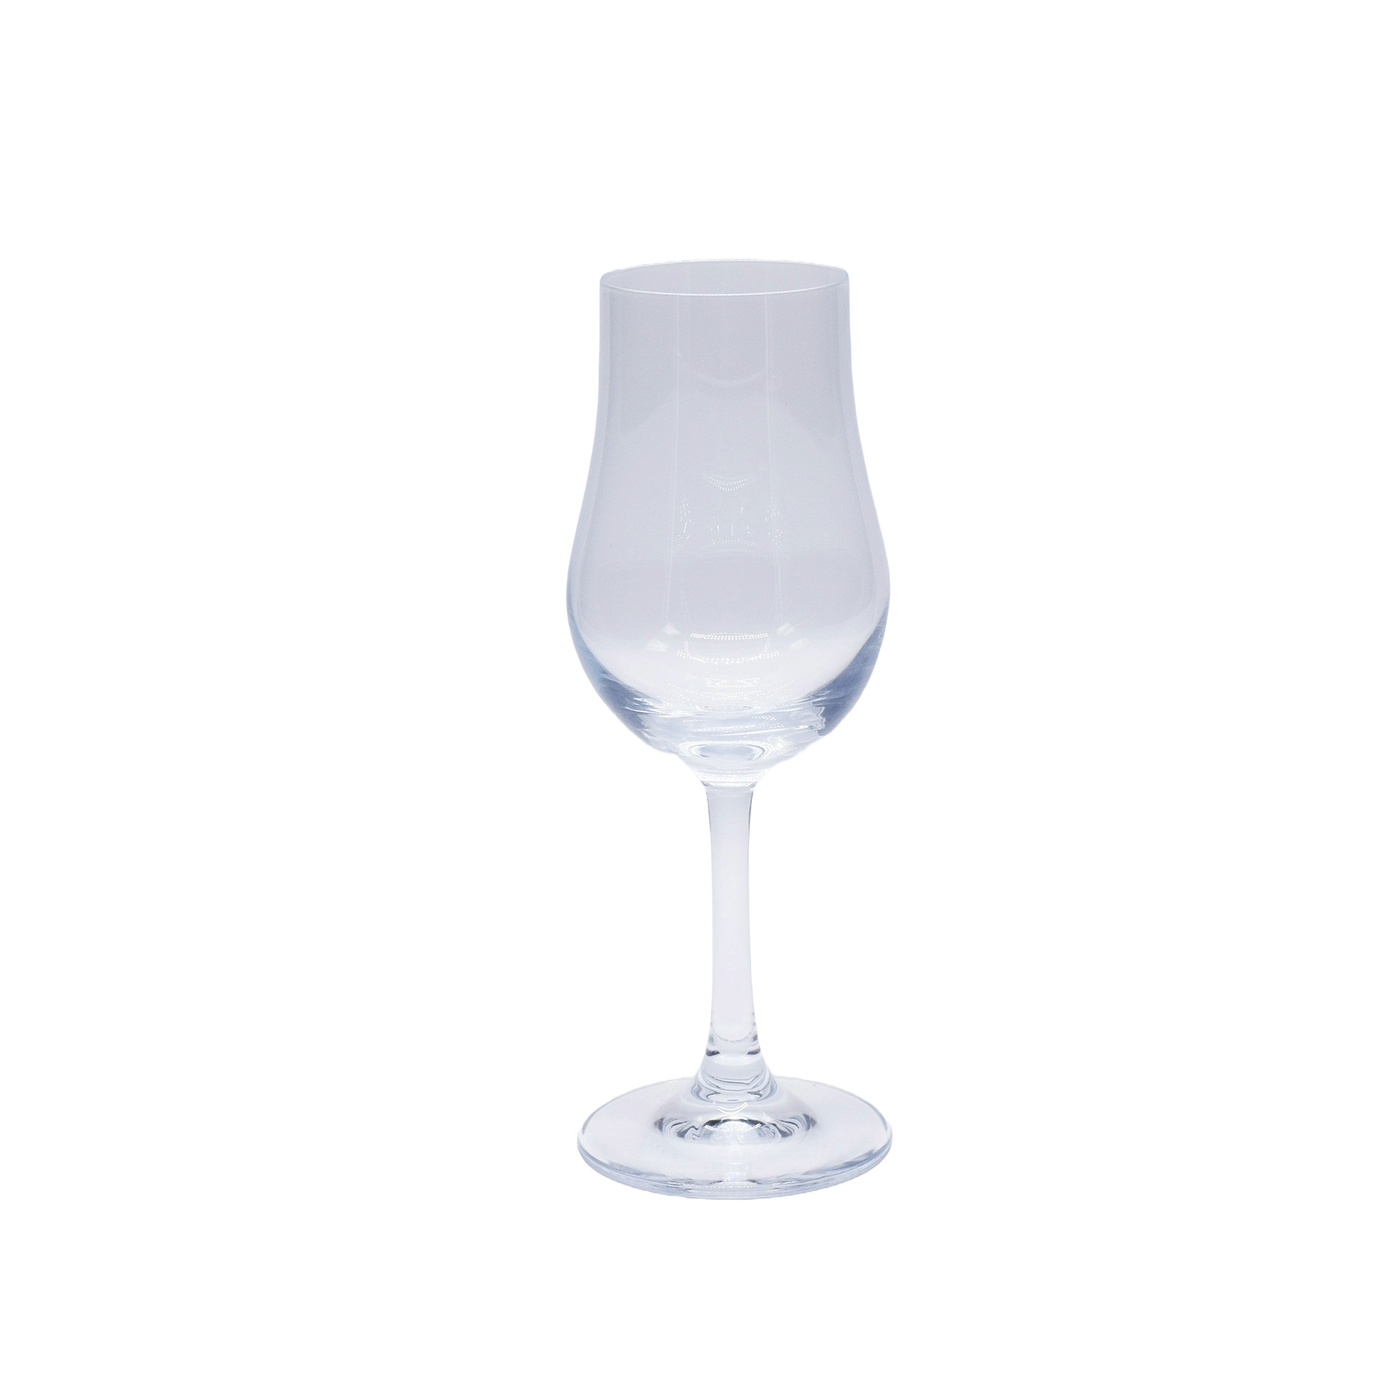 Classic Destillat Tasting Glass  6 1⁄4 oz - Set of six.